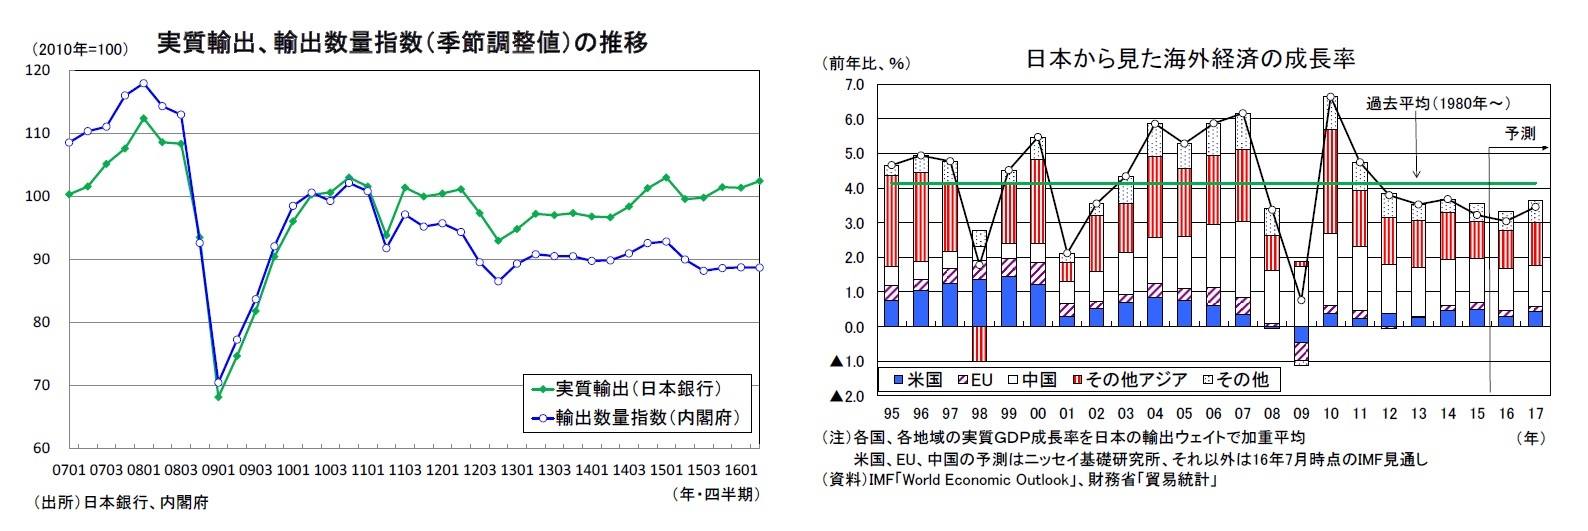 実質輸出、輸出数量指数（季節調整値）の推移/日本から見た海外経済の成長率